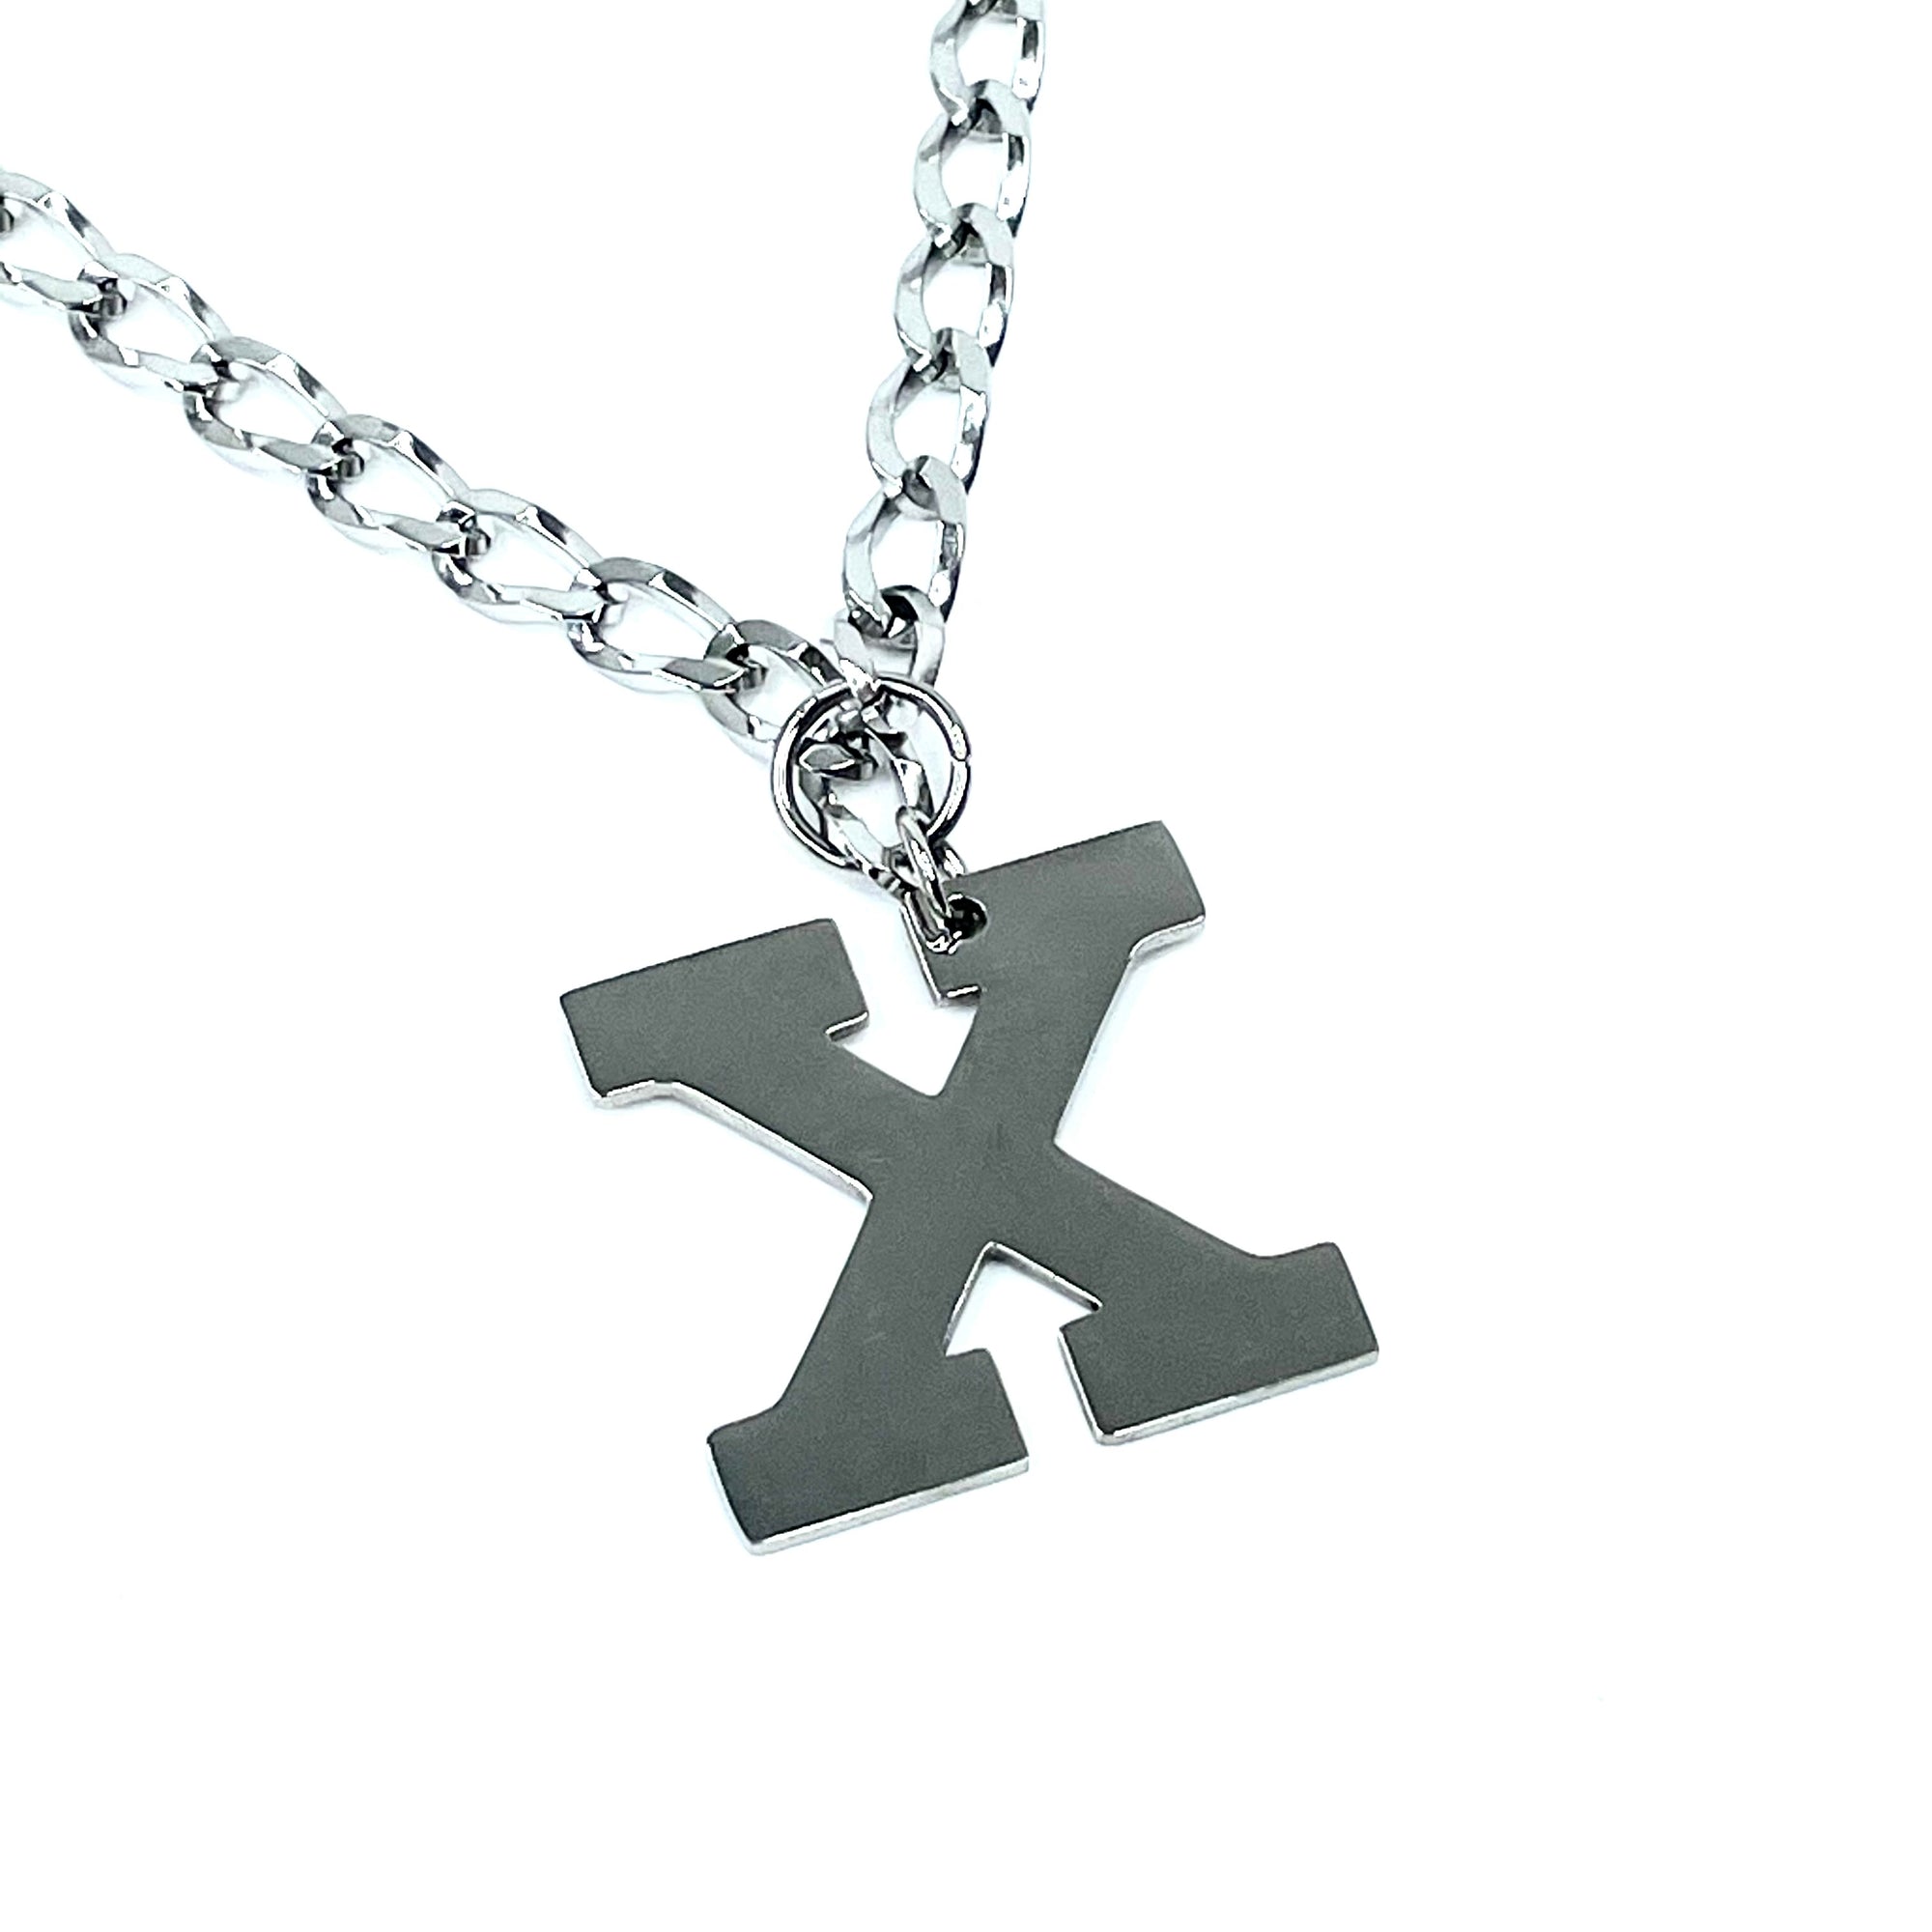 Lettering Legend Necklace Necklaces Cerese D, Inc. Silver X 